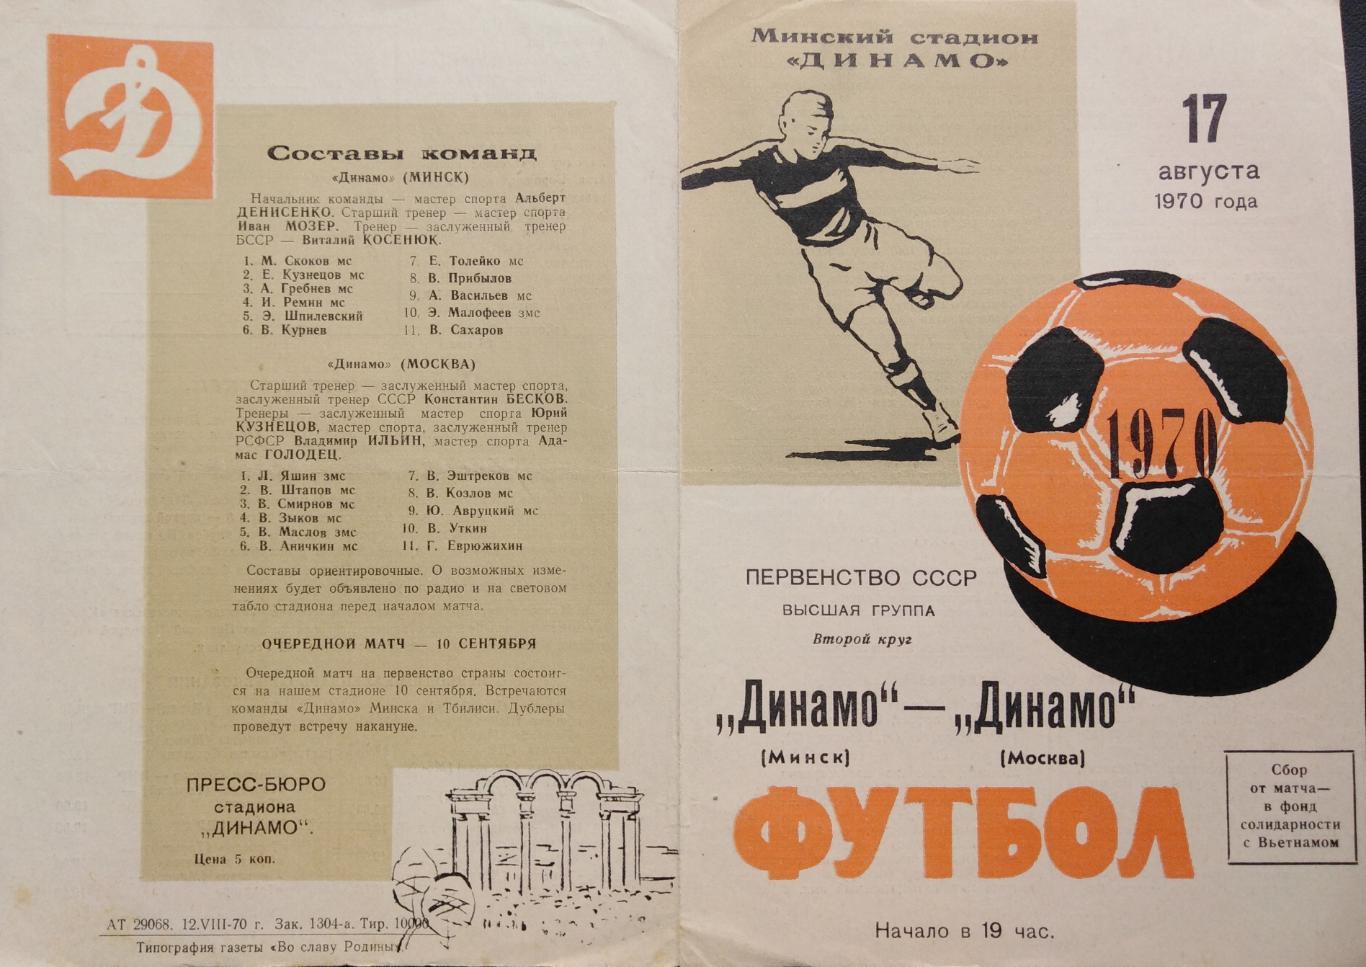 Динамо Минск - Динамо Москва - 17.08.1970